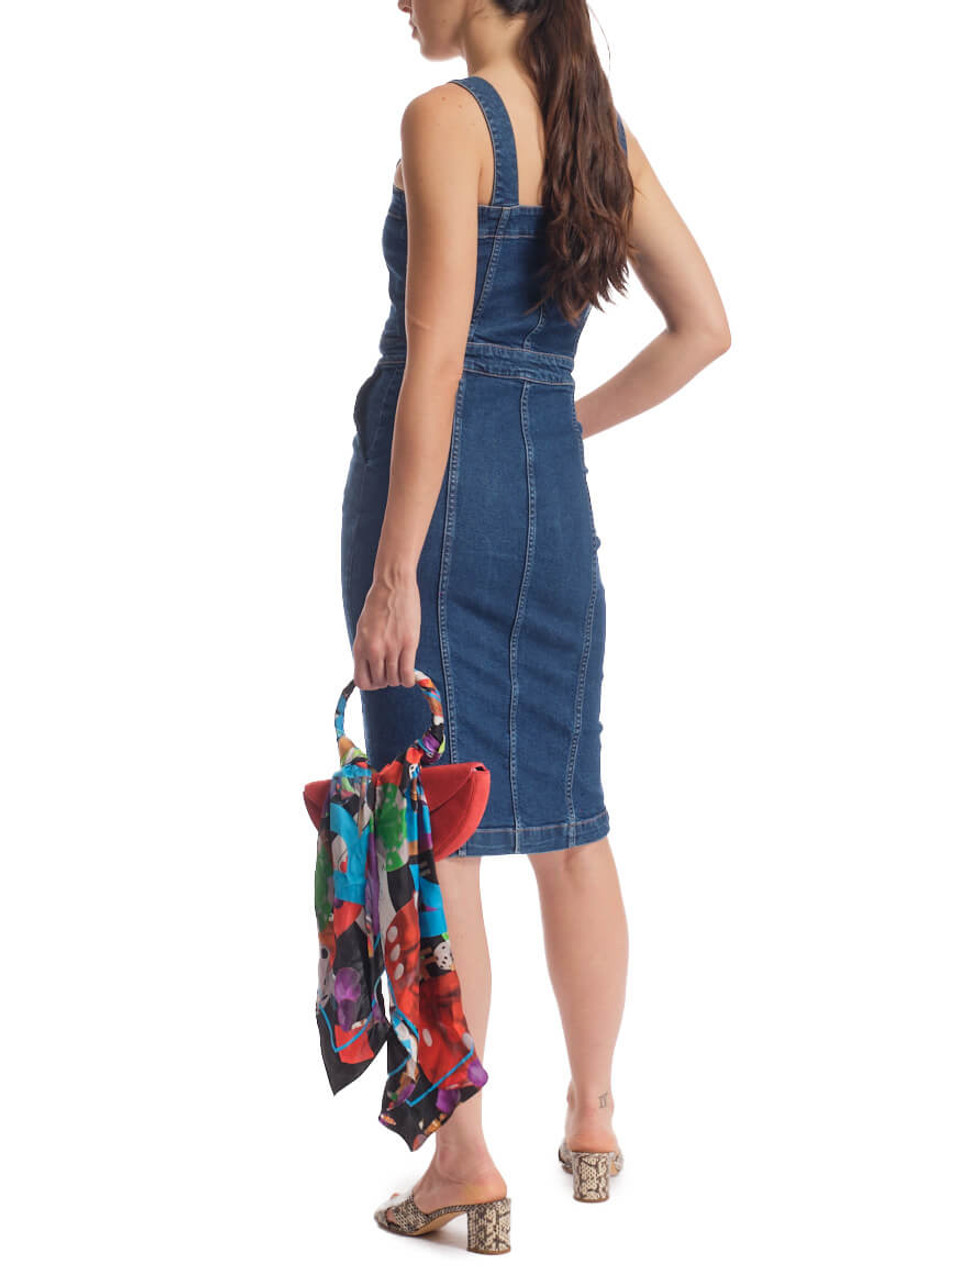 Bebe Denim Dresses for Girls Sizes (4+) | Mercari